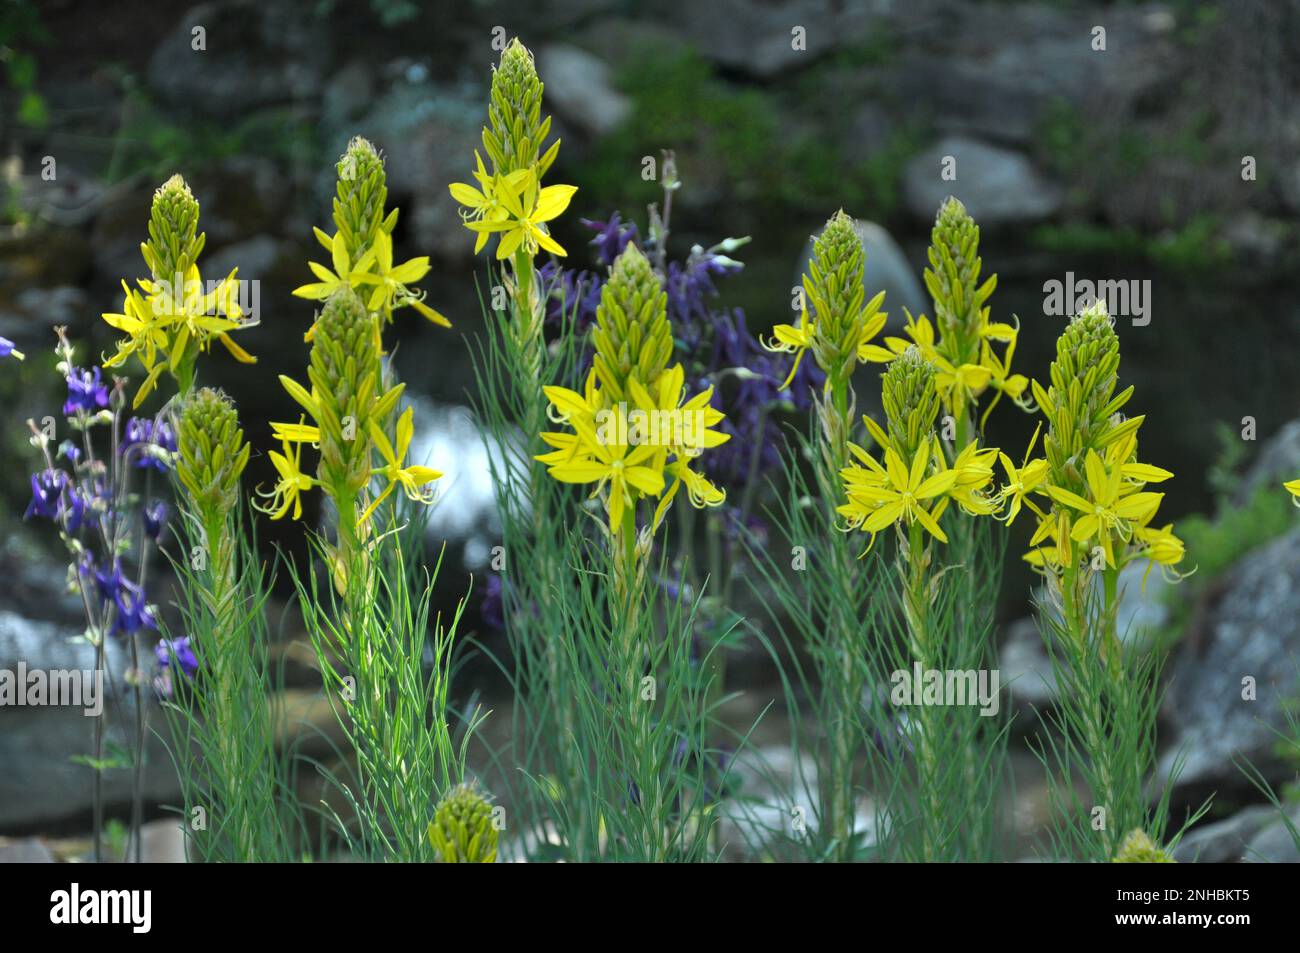 Asphodeline lutea blooms in the botanical garden in summer Stock Photo